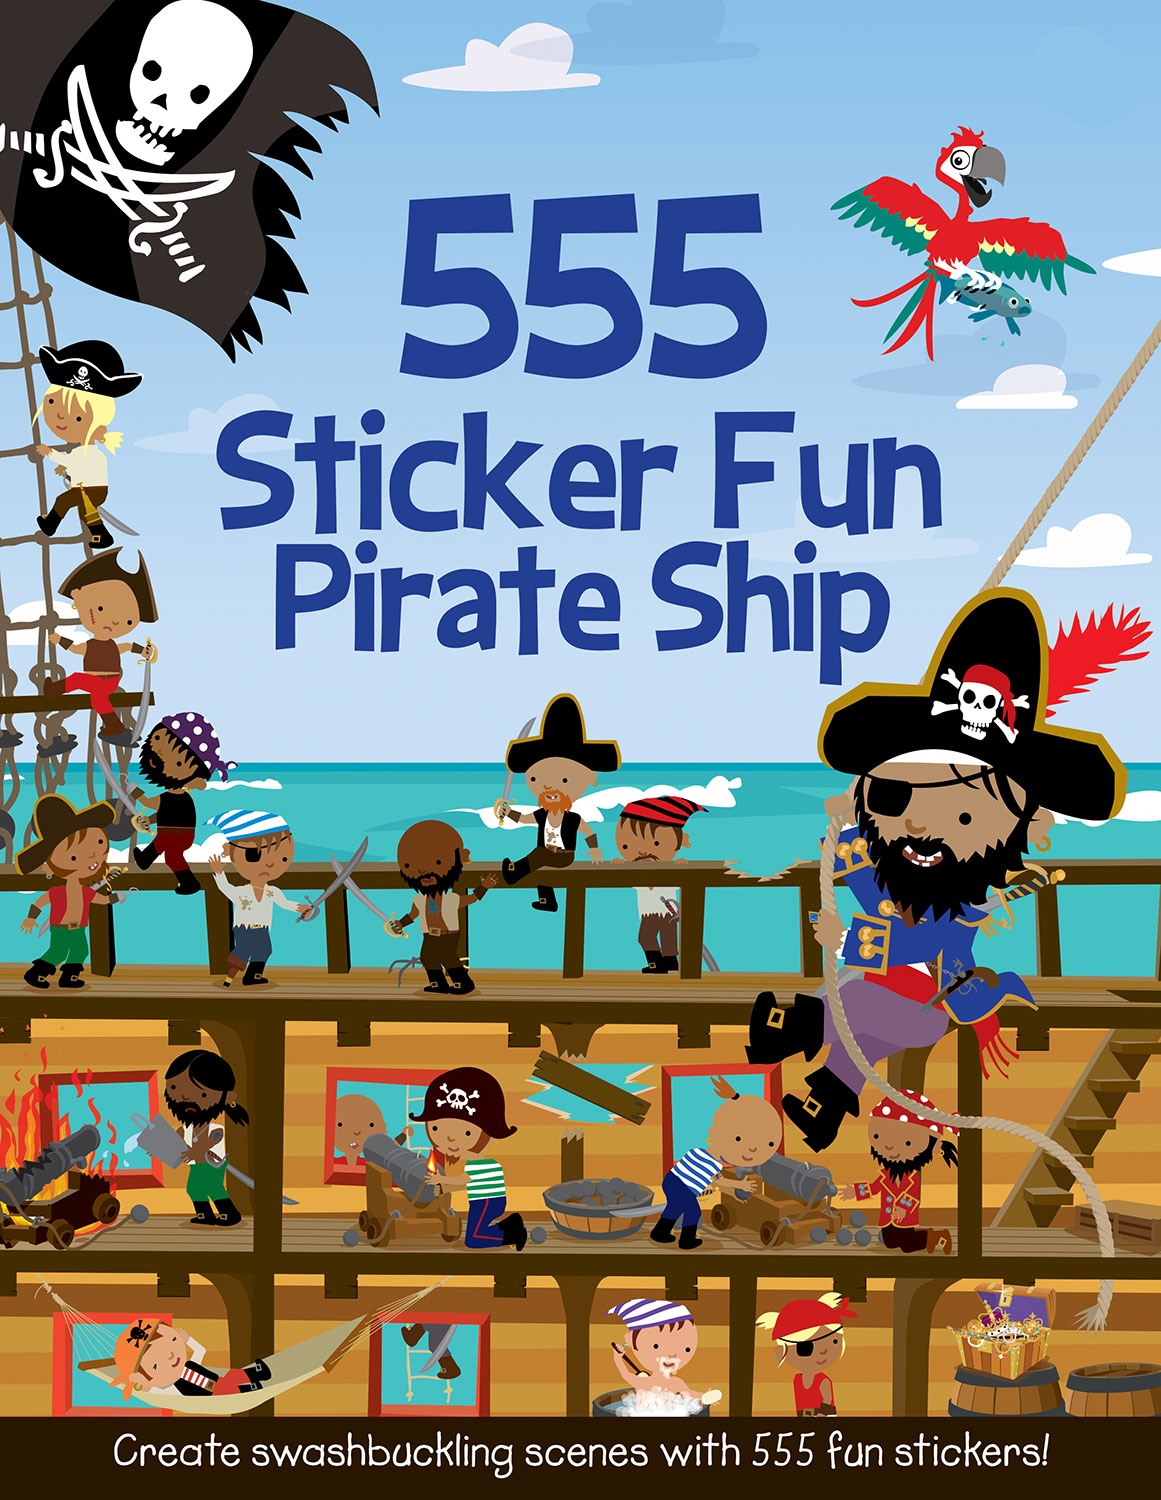 555 Sticker Fun Pirate Ship (Series Sticker Fun)